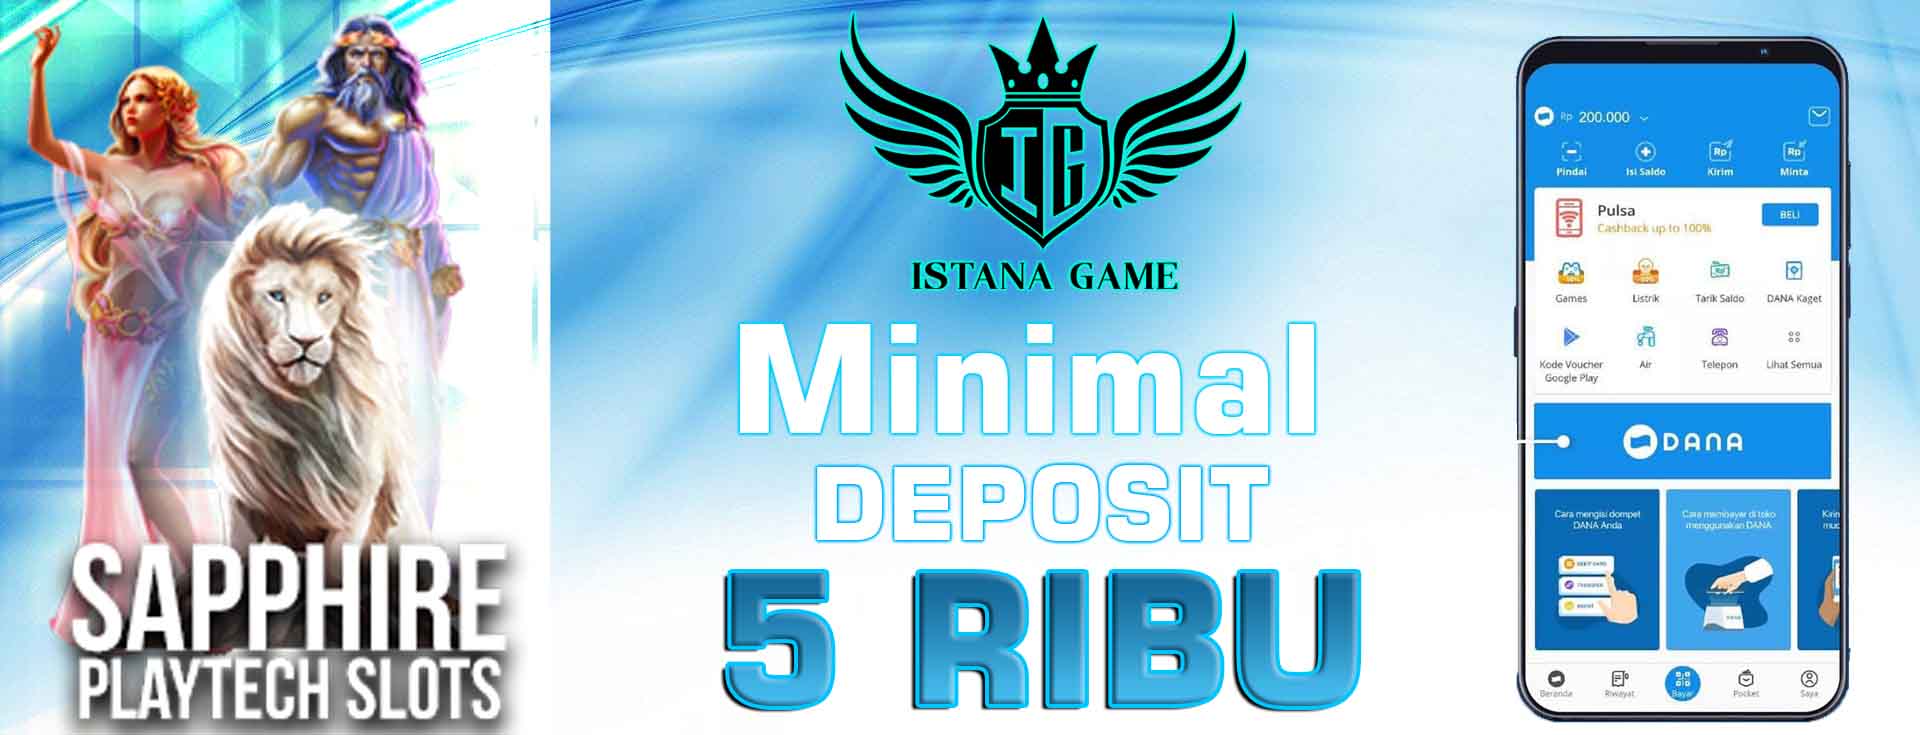 Daftar Slot Deposit DANA Bonus New Member 50% Terbaru ISTANAGAME